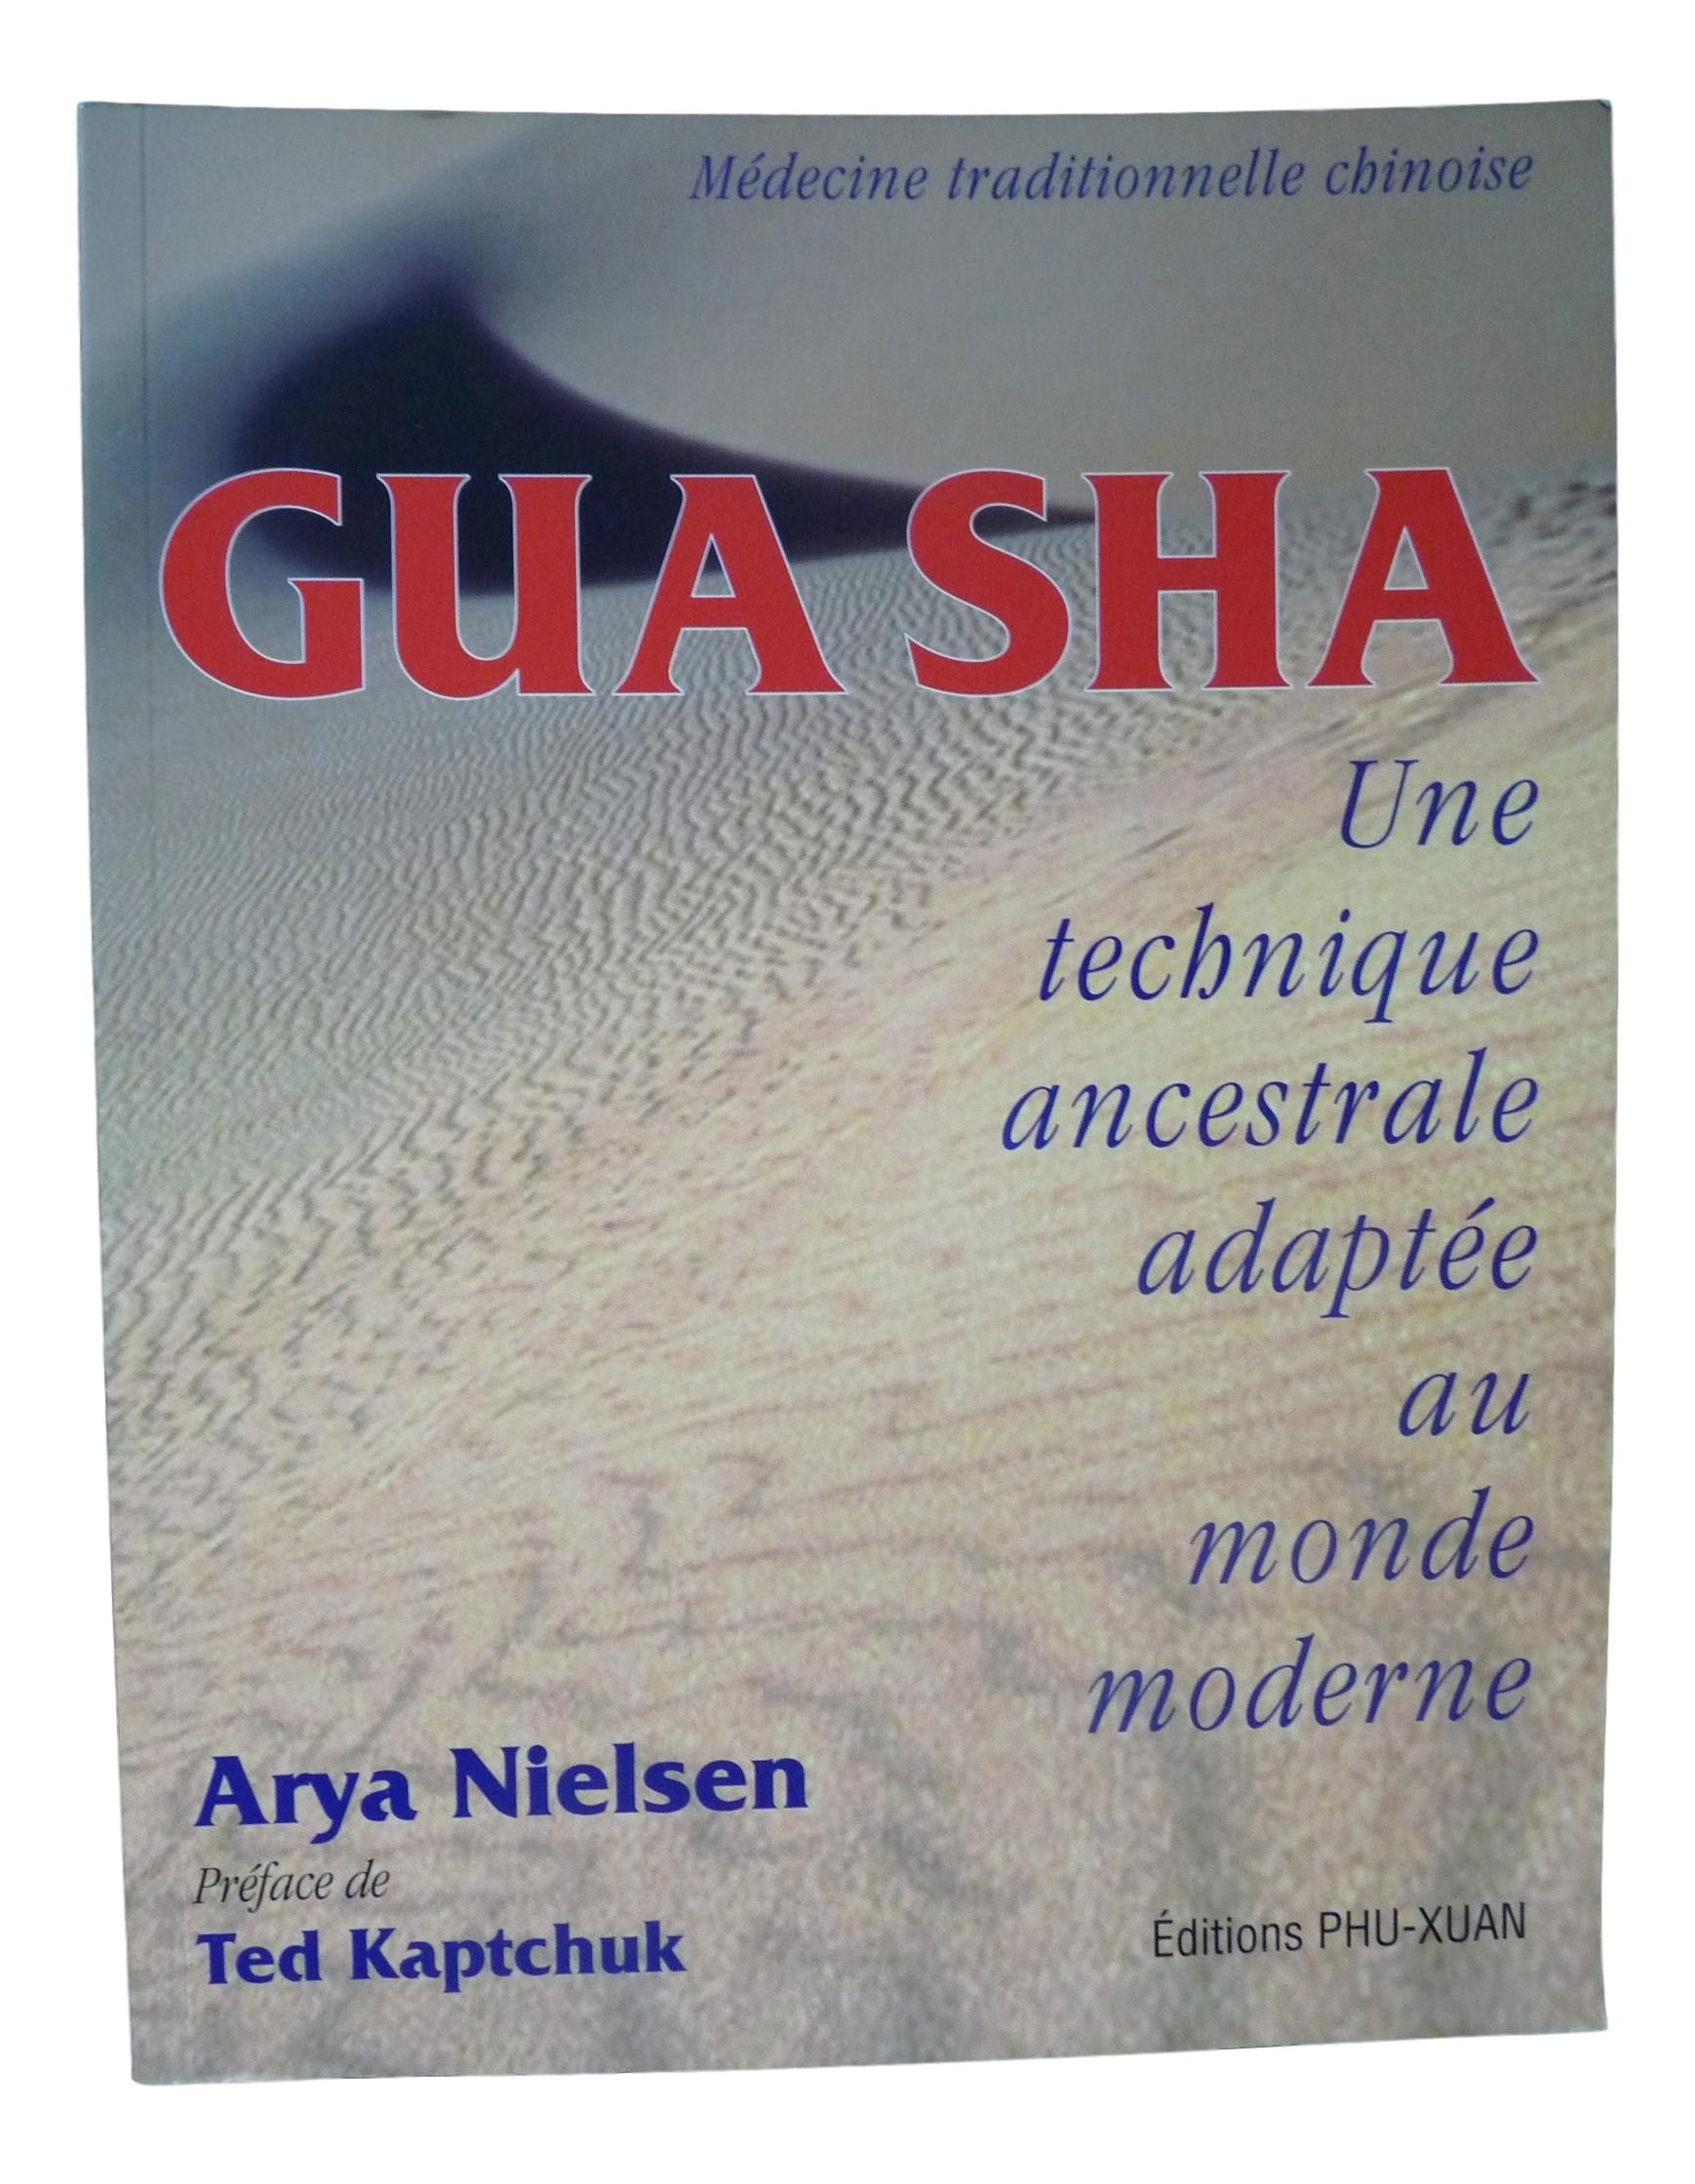 GUA SHA, une technique ancestrale adaptée au monde moderne